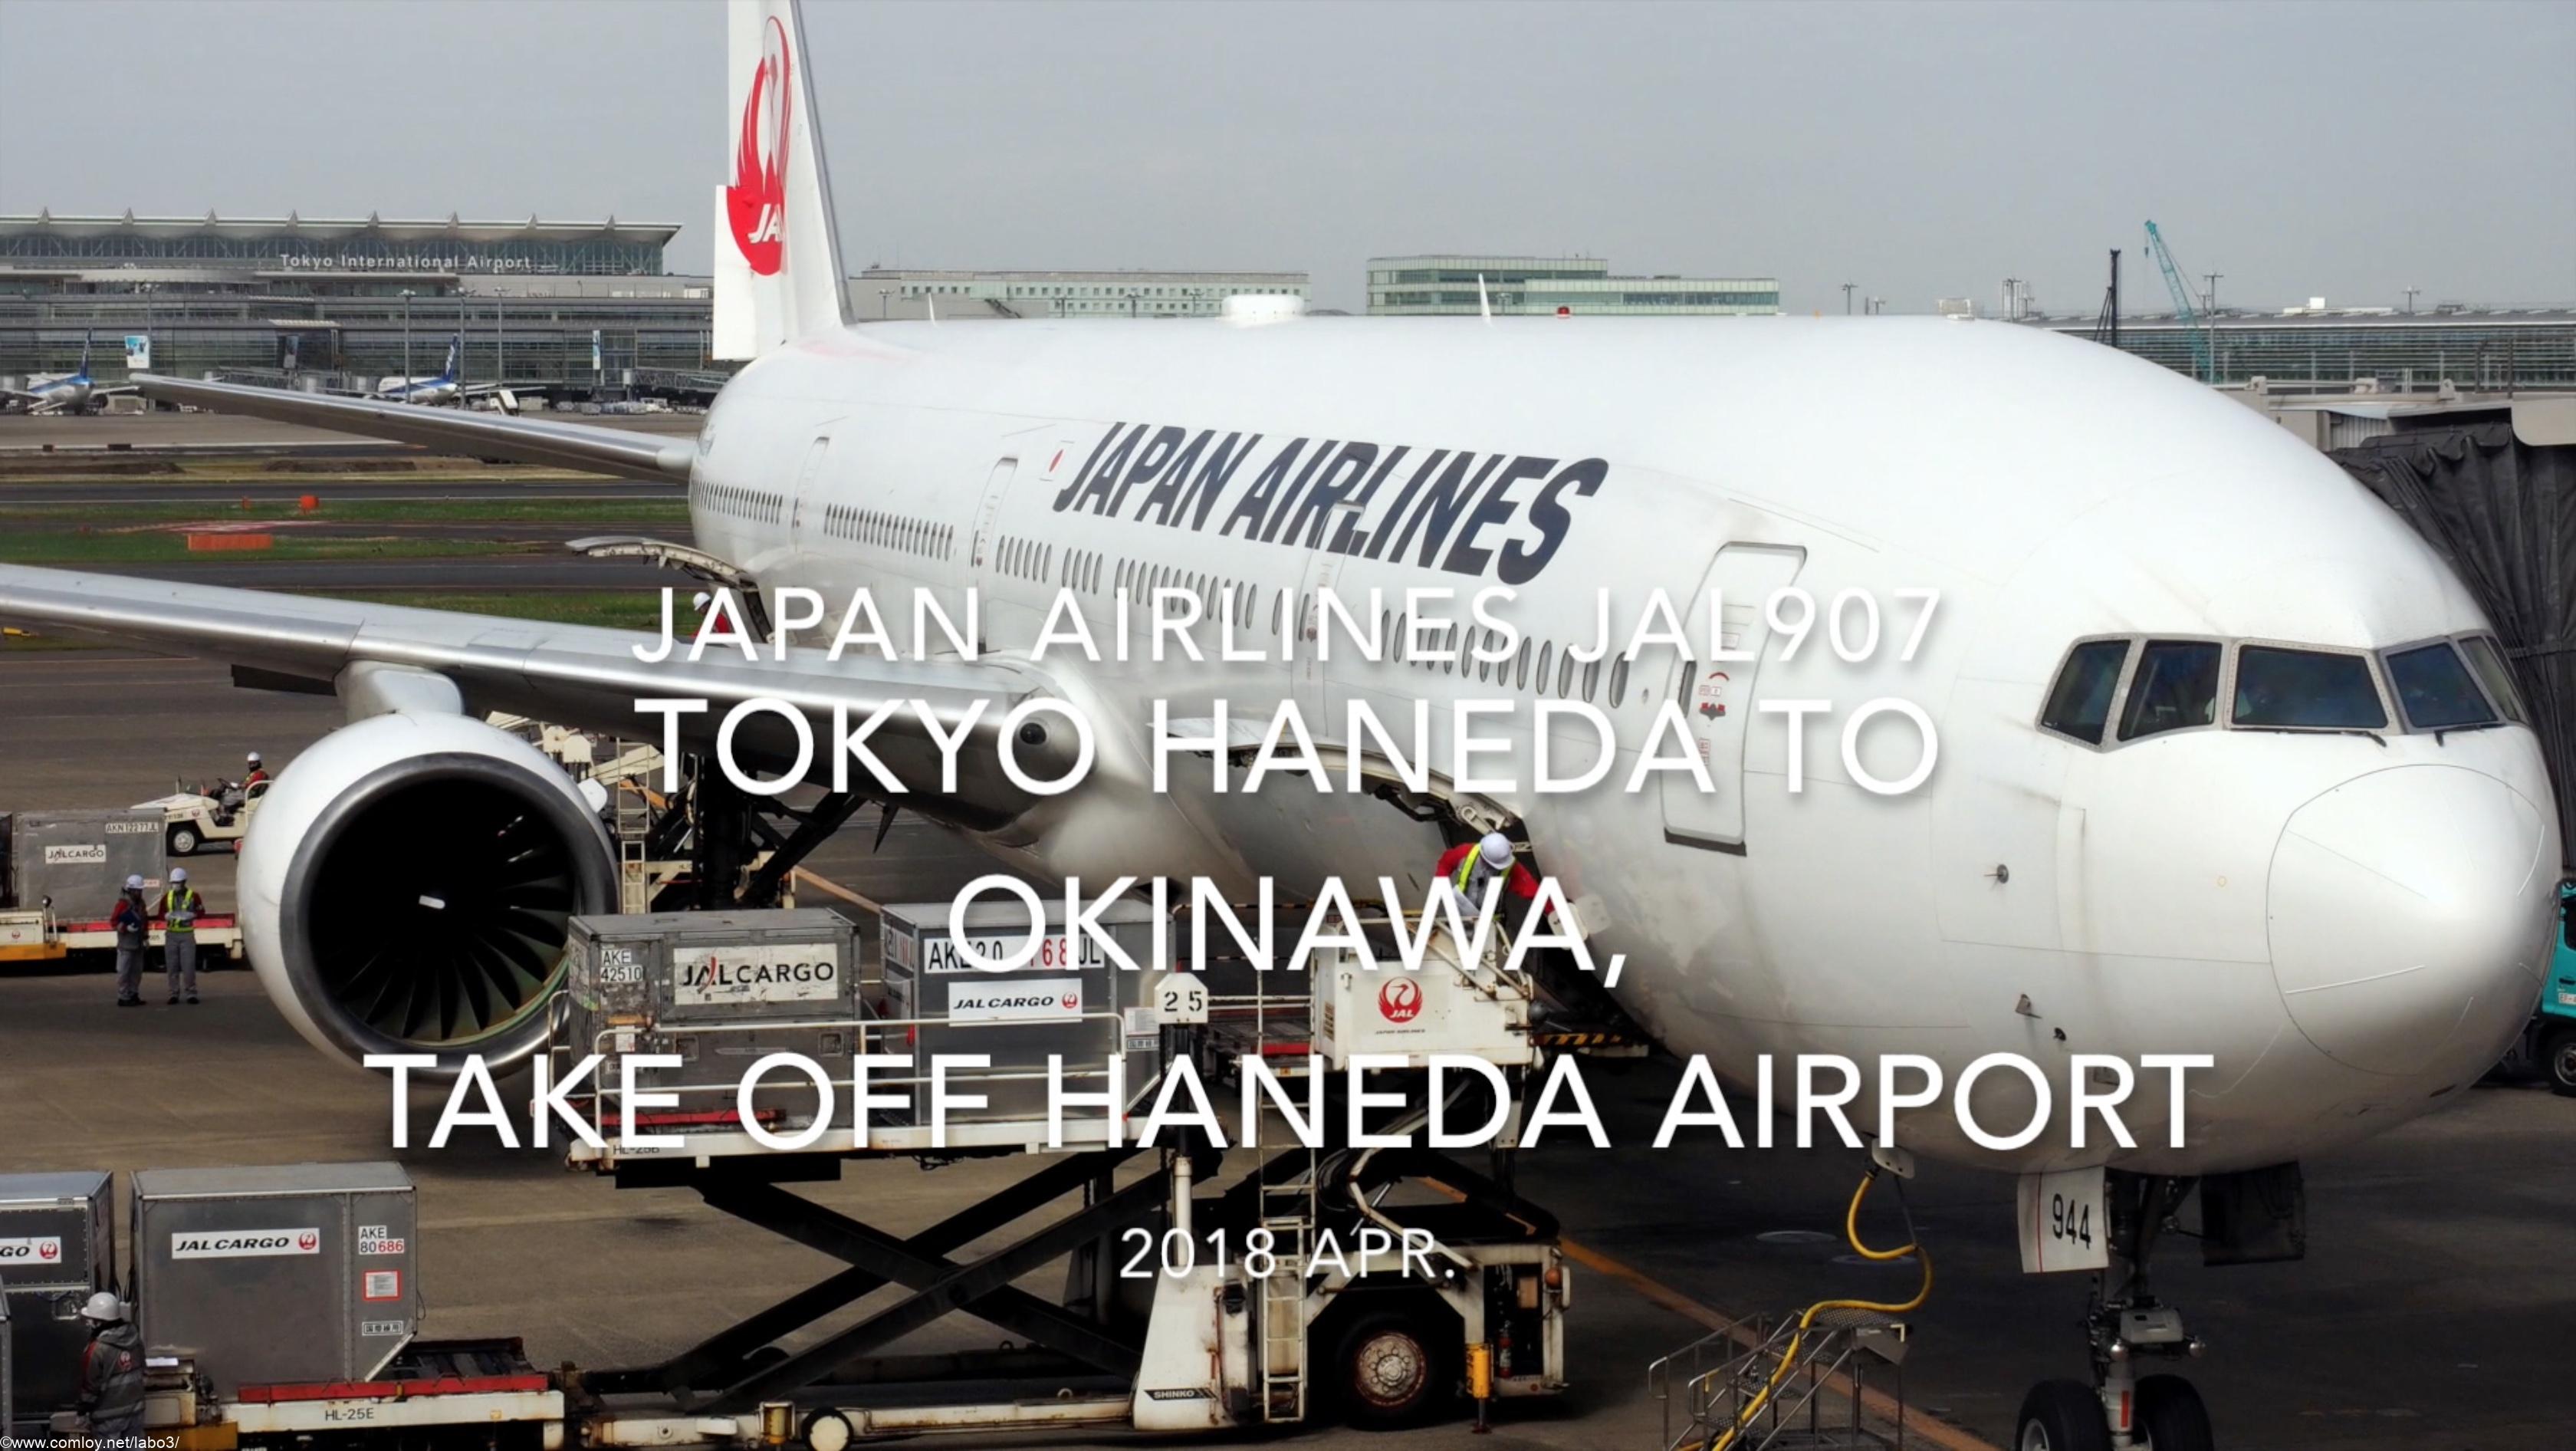 【機内から離着陸映像】2018 Apr JAL JAL907 TOKYO HANEDA to OKINAWA, Take off TOKYO Haneda airport